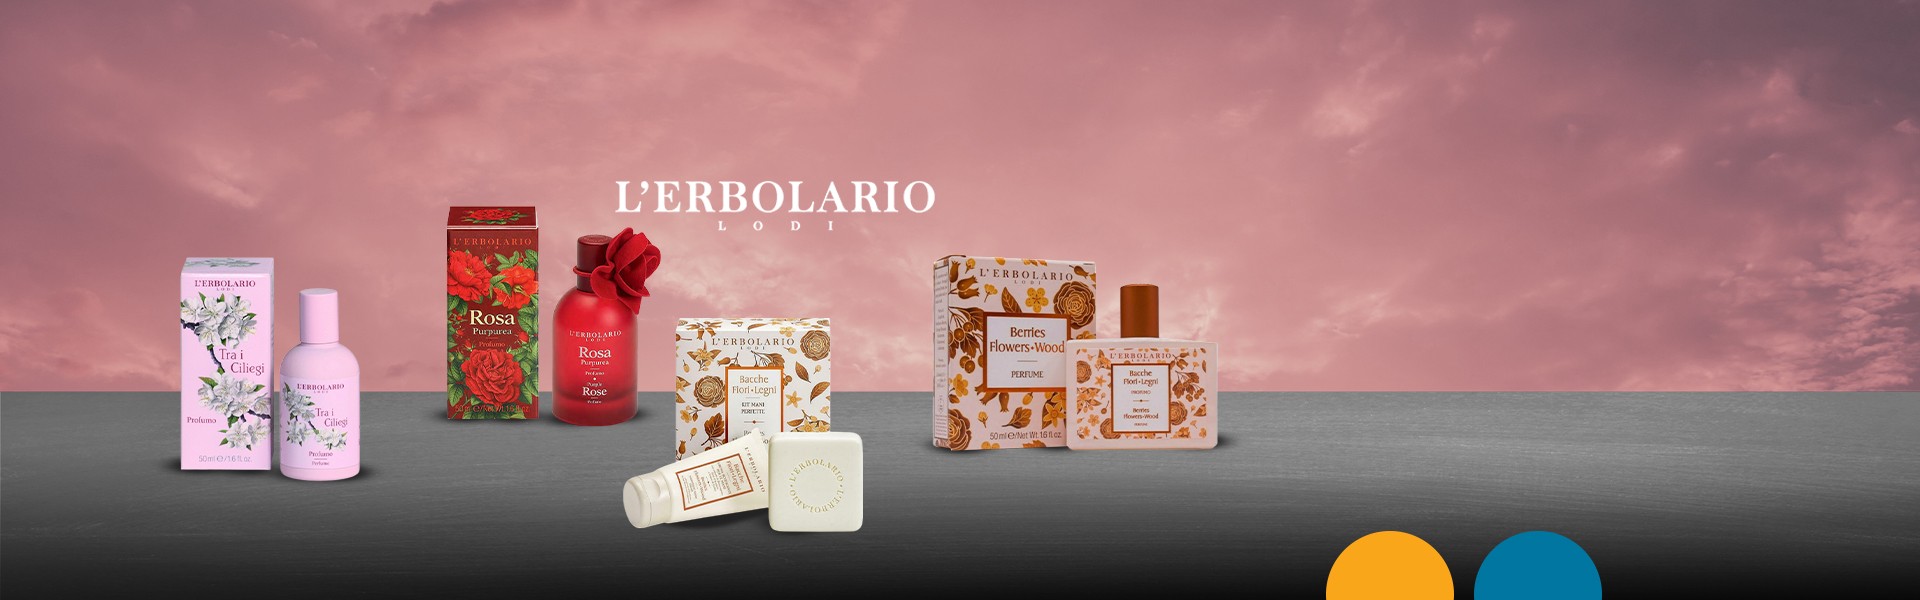 Προλάβετε όλα τα προϊόντα της LErbolario,